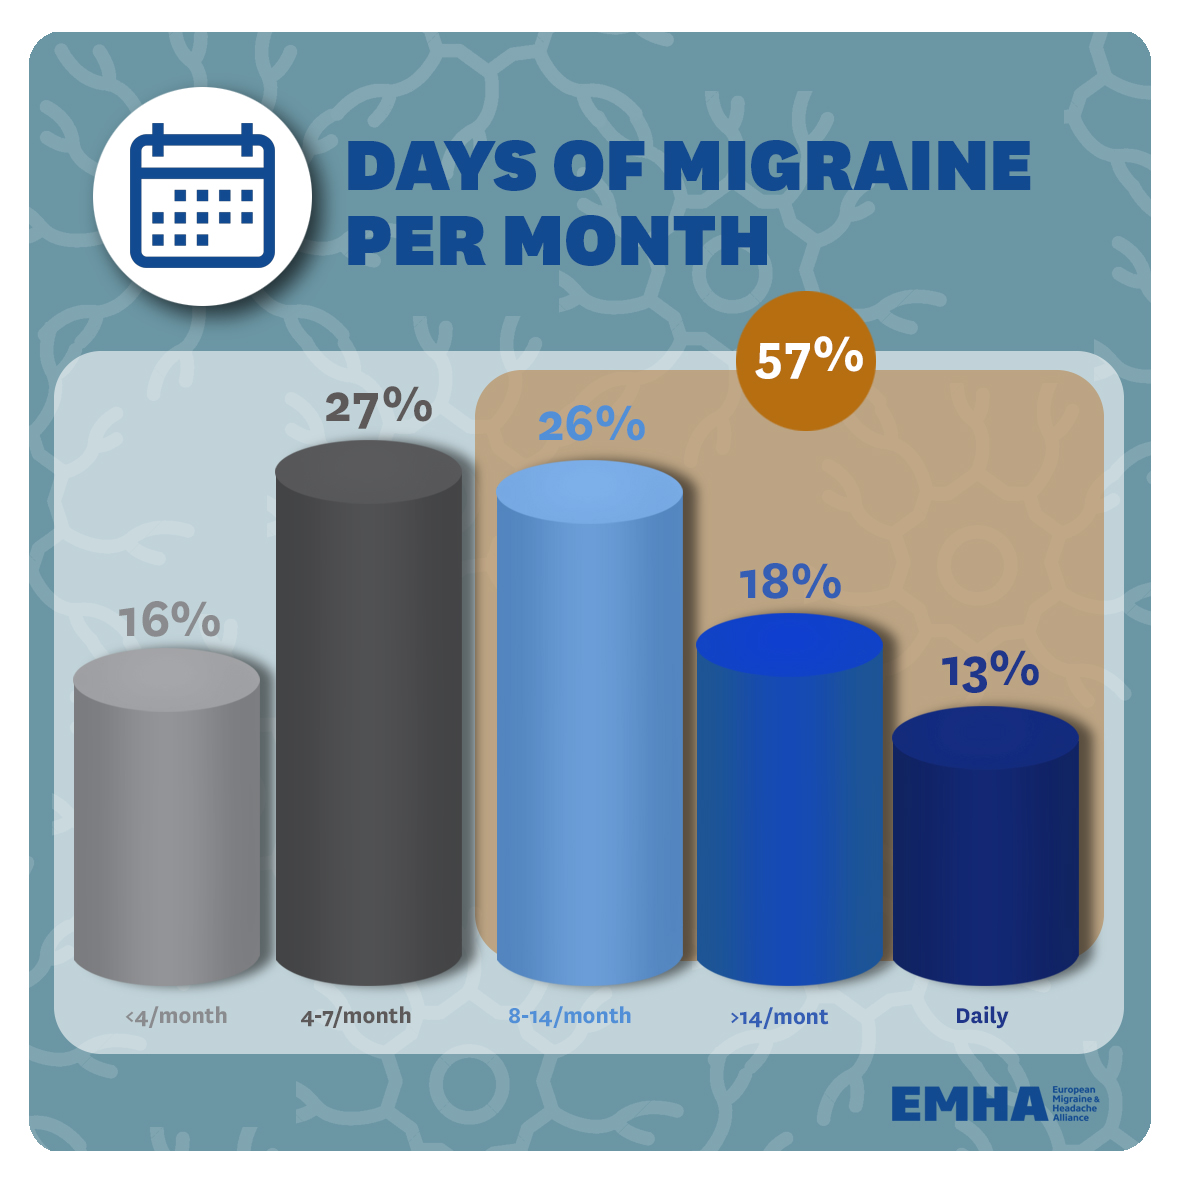 7.-Day-sof-migraine-per-month